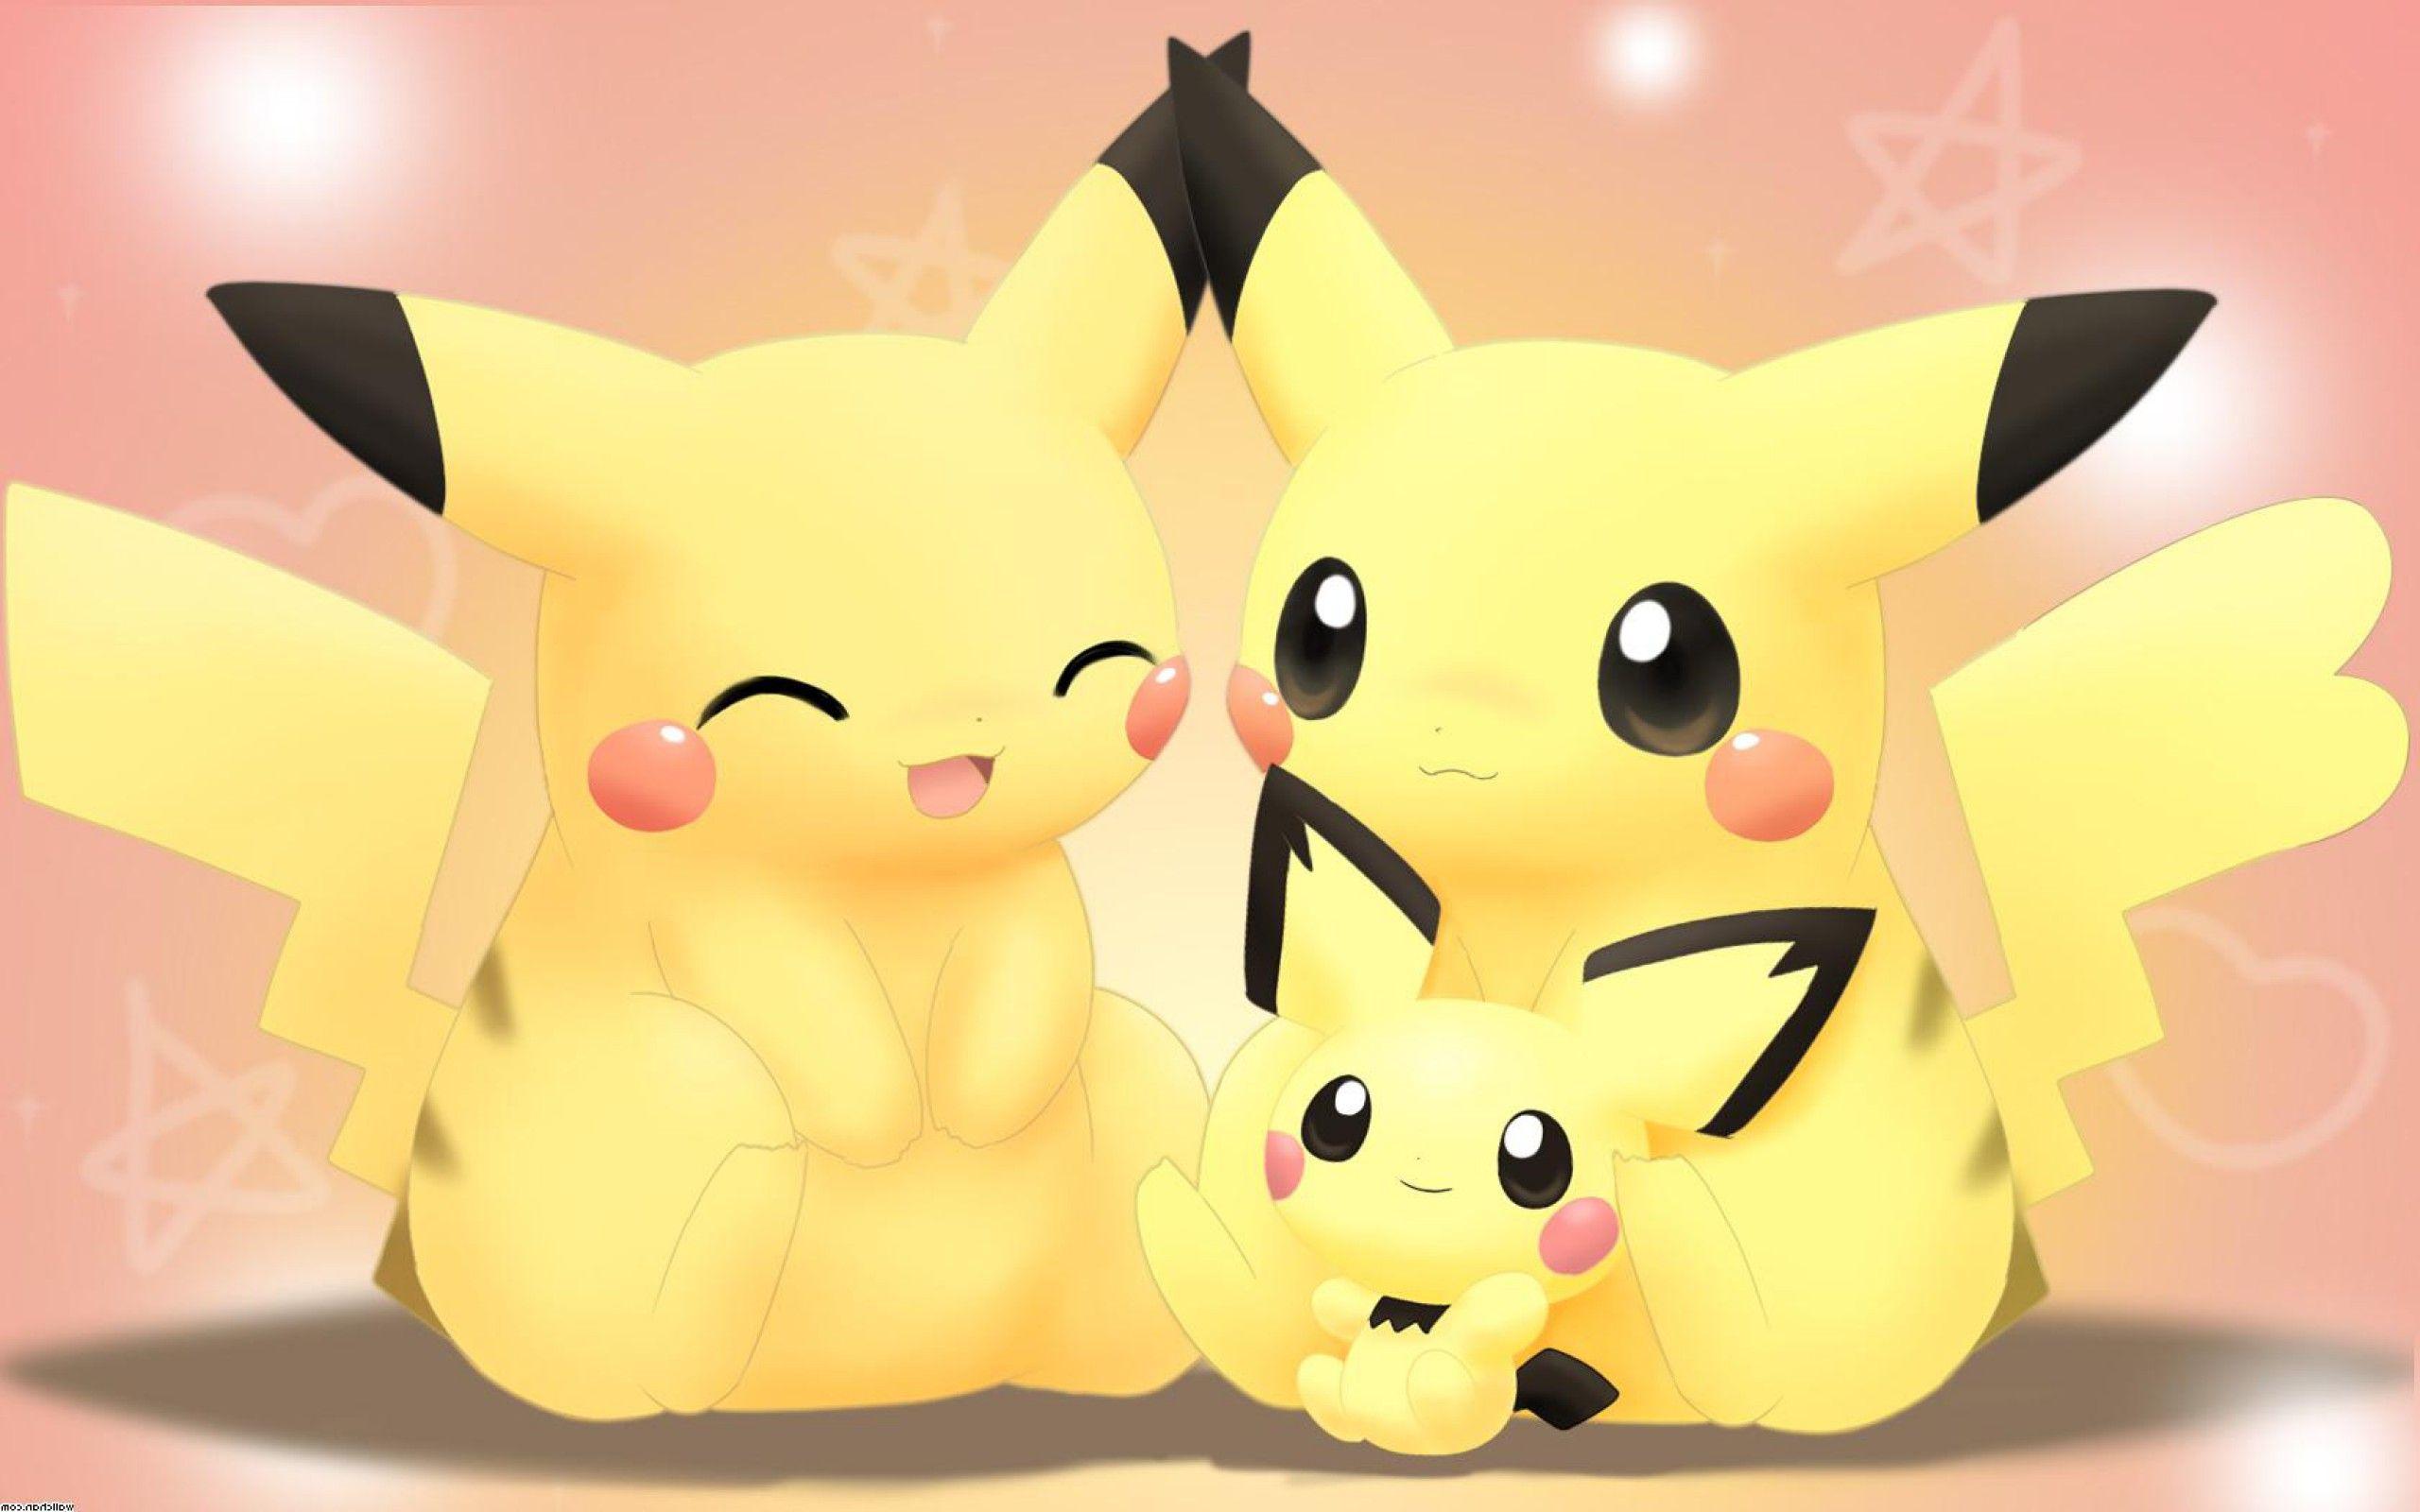 Pikachu là một trong những Pokémon được yêu thích nhất trên thế giới. Và một hình nền Pikachu dễ thương động sẽ tạo thành một lựa chọn tuyệt vời. Các hình nền Pikachu sẽ thể hiện được tính cách đáng yêu, năng động của Pokemon điện nhỏ bé này. Hãy tải ngay và cảm nhận sự đáng yêu của Pikachu thông qua hình nền động.